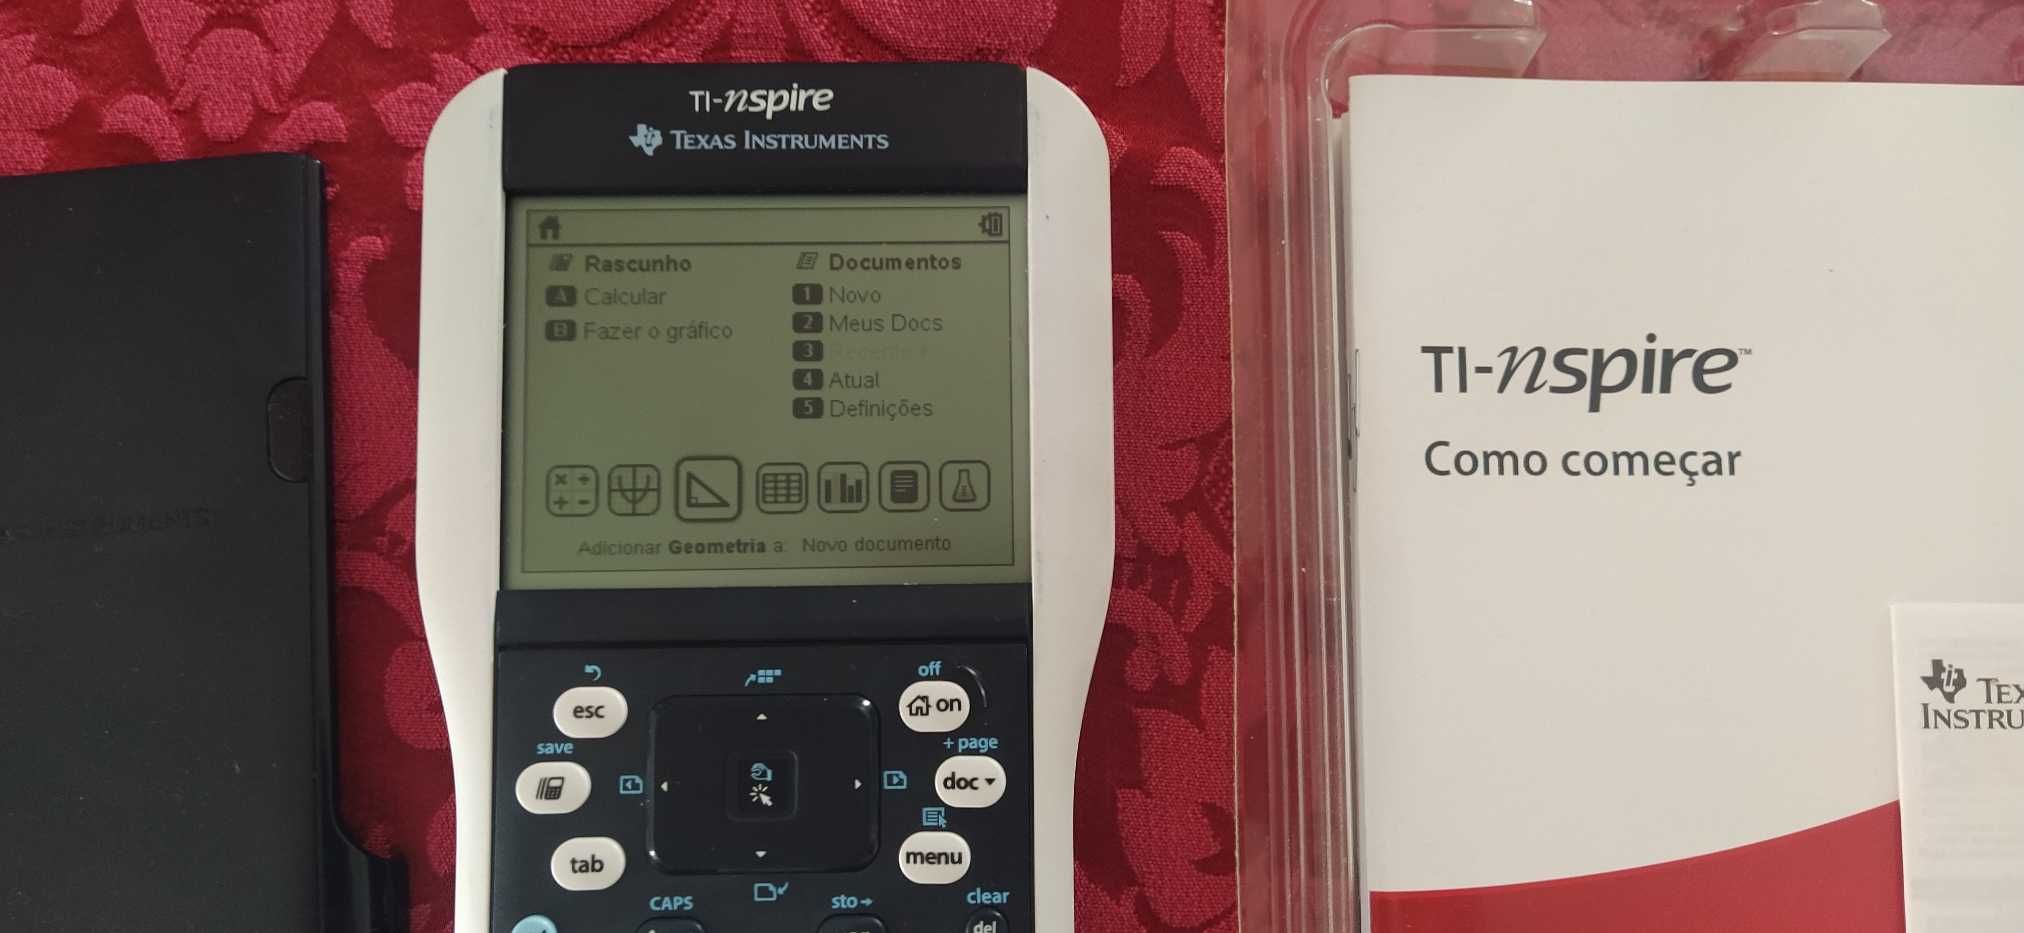 Calculadora Texas Instruments TI-nspire